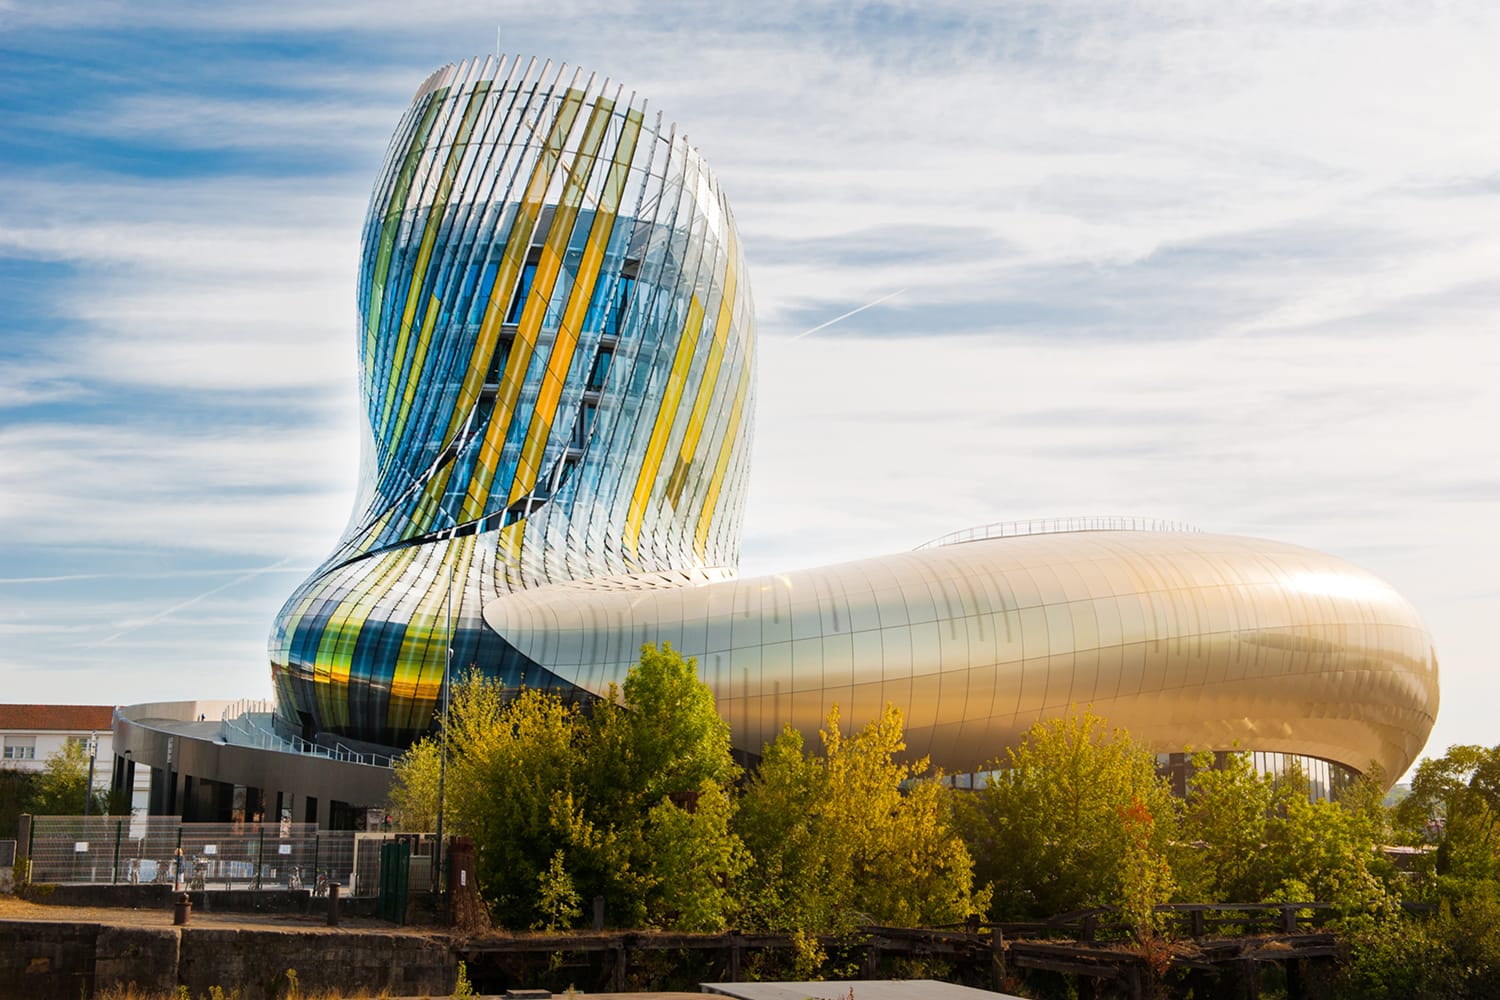 La Cite du Vin, the wine museum of Bordeaux, France